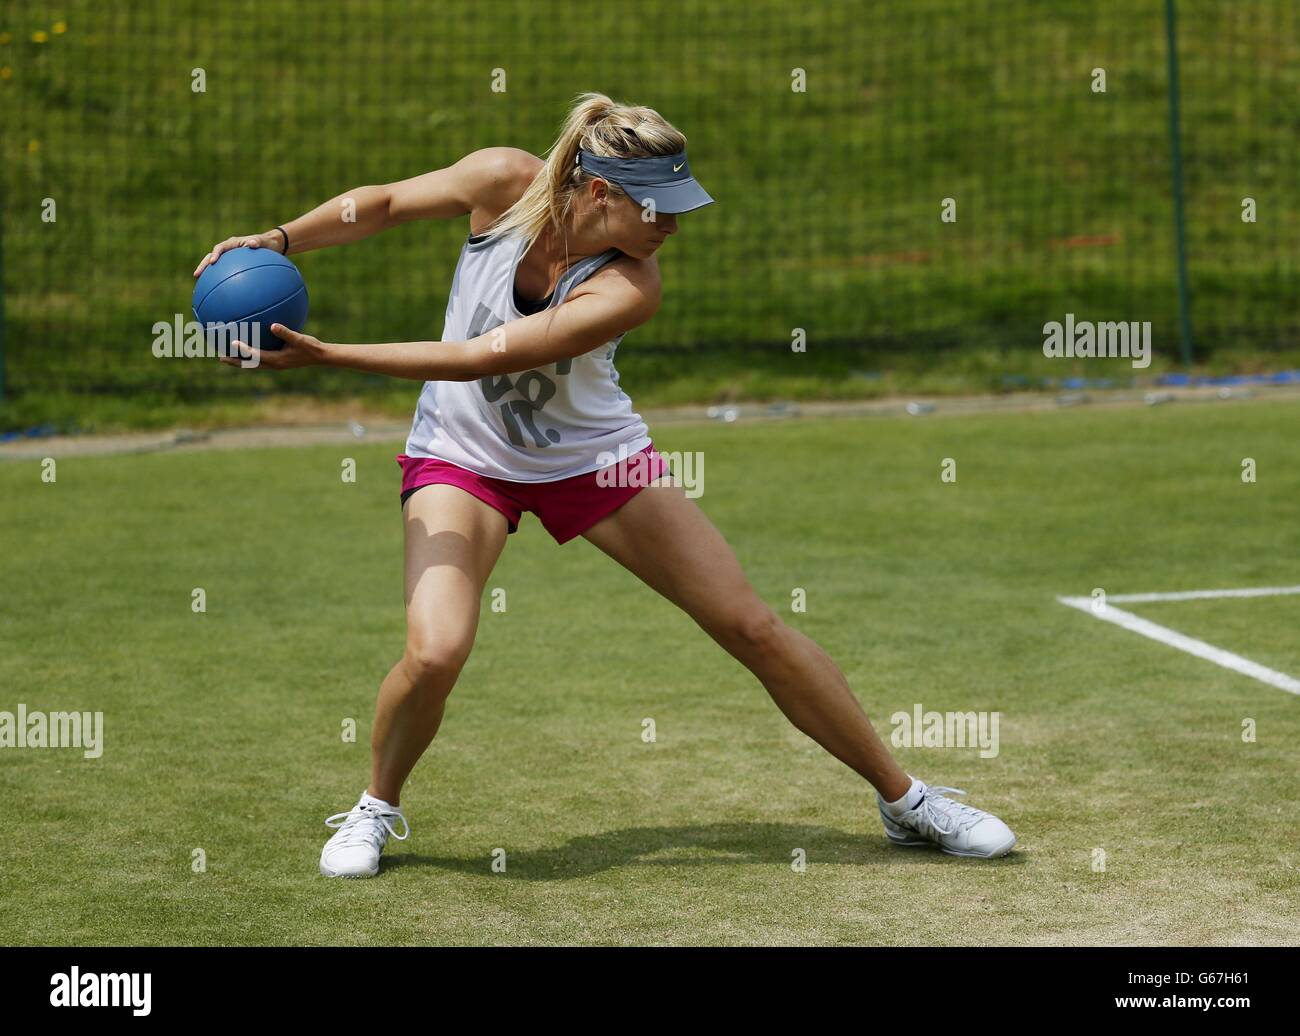 Maria Sharapova, en Russie, s'étire lors d'une séance d'entraînement pendant la deuxième journée des championnats de Wimbledon au All England Lawn tennis and Croquet Club, Wimbledon. Banque D'Images